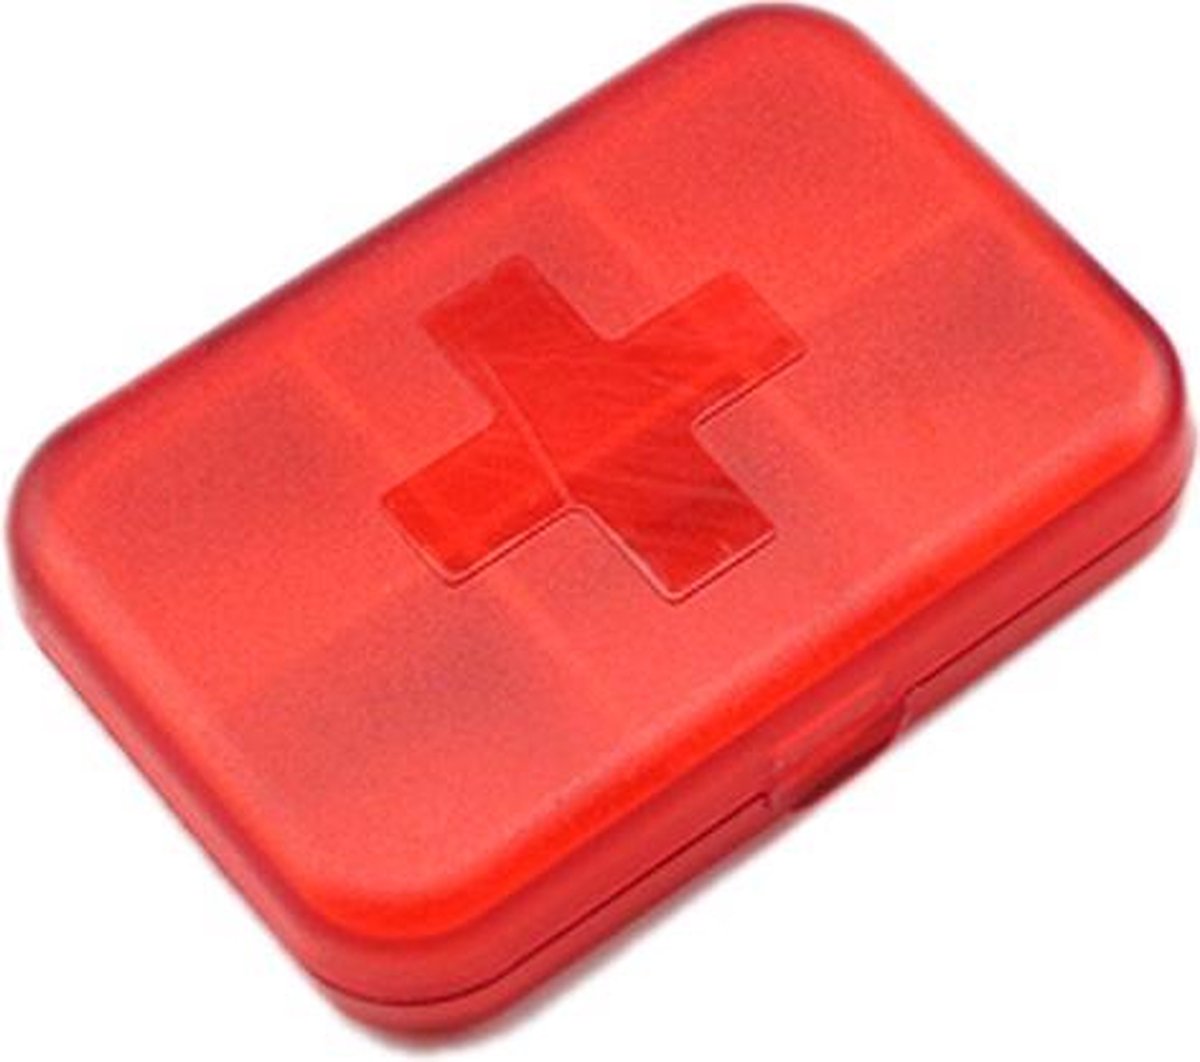 Rode medicatie box met 6 vakjes (Pillendoos)